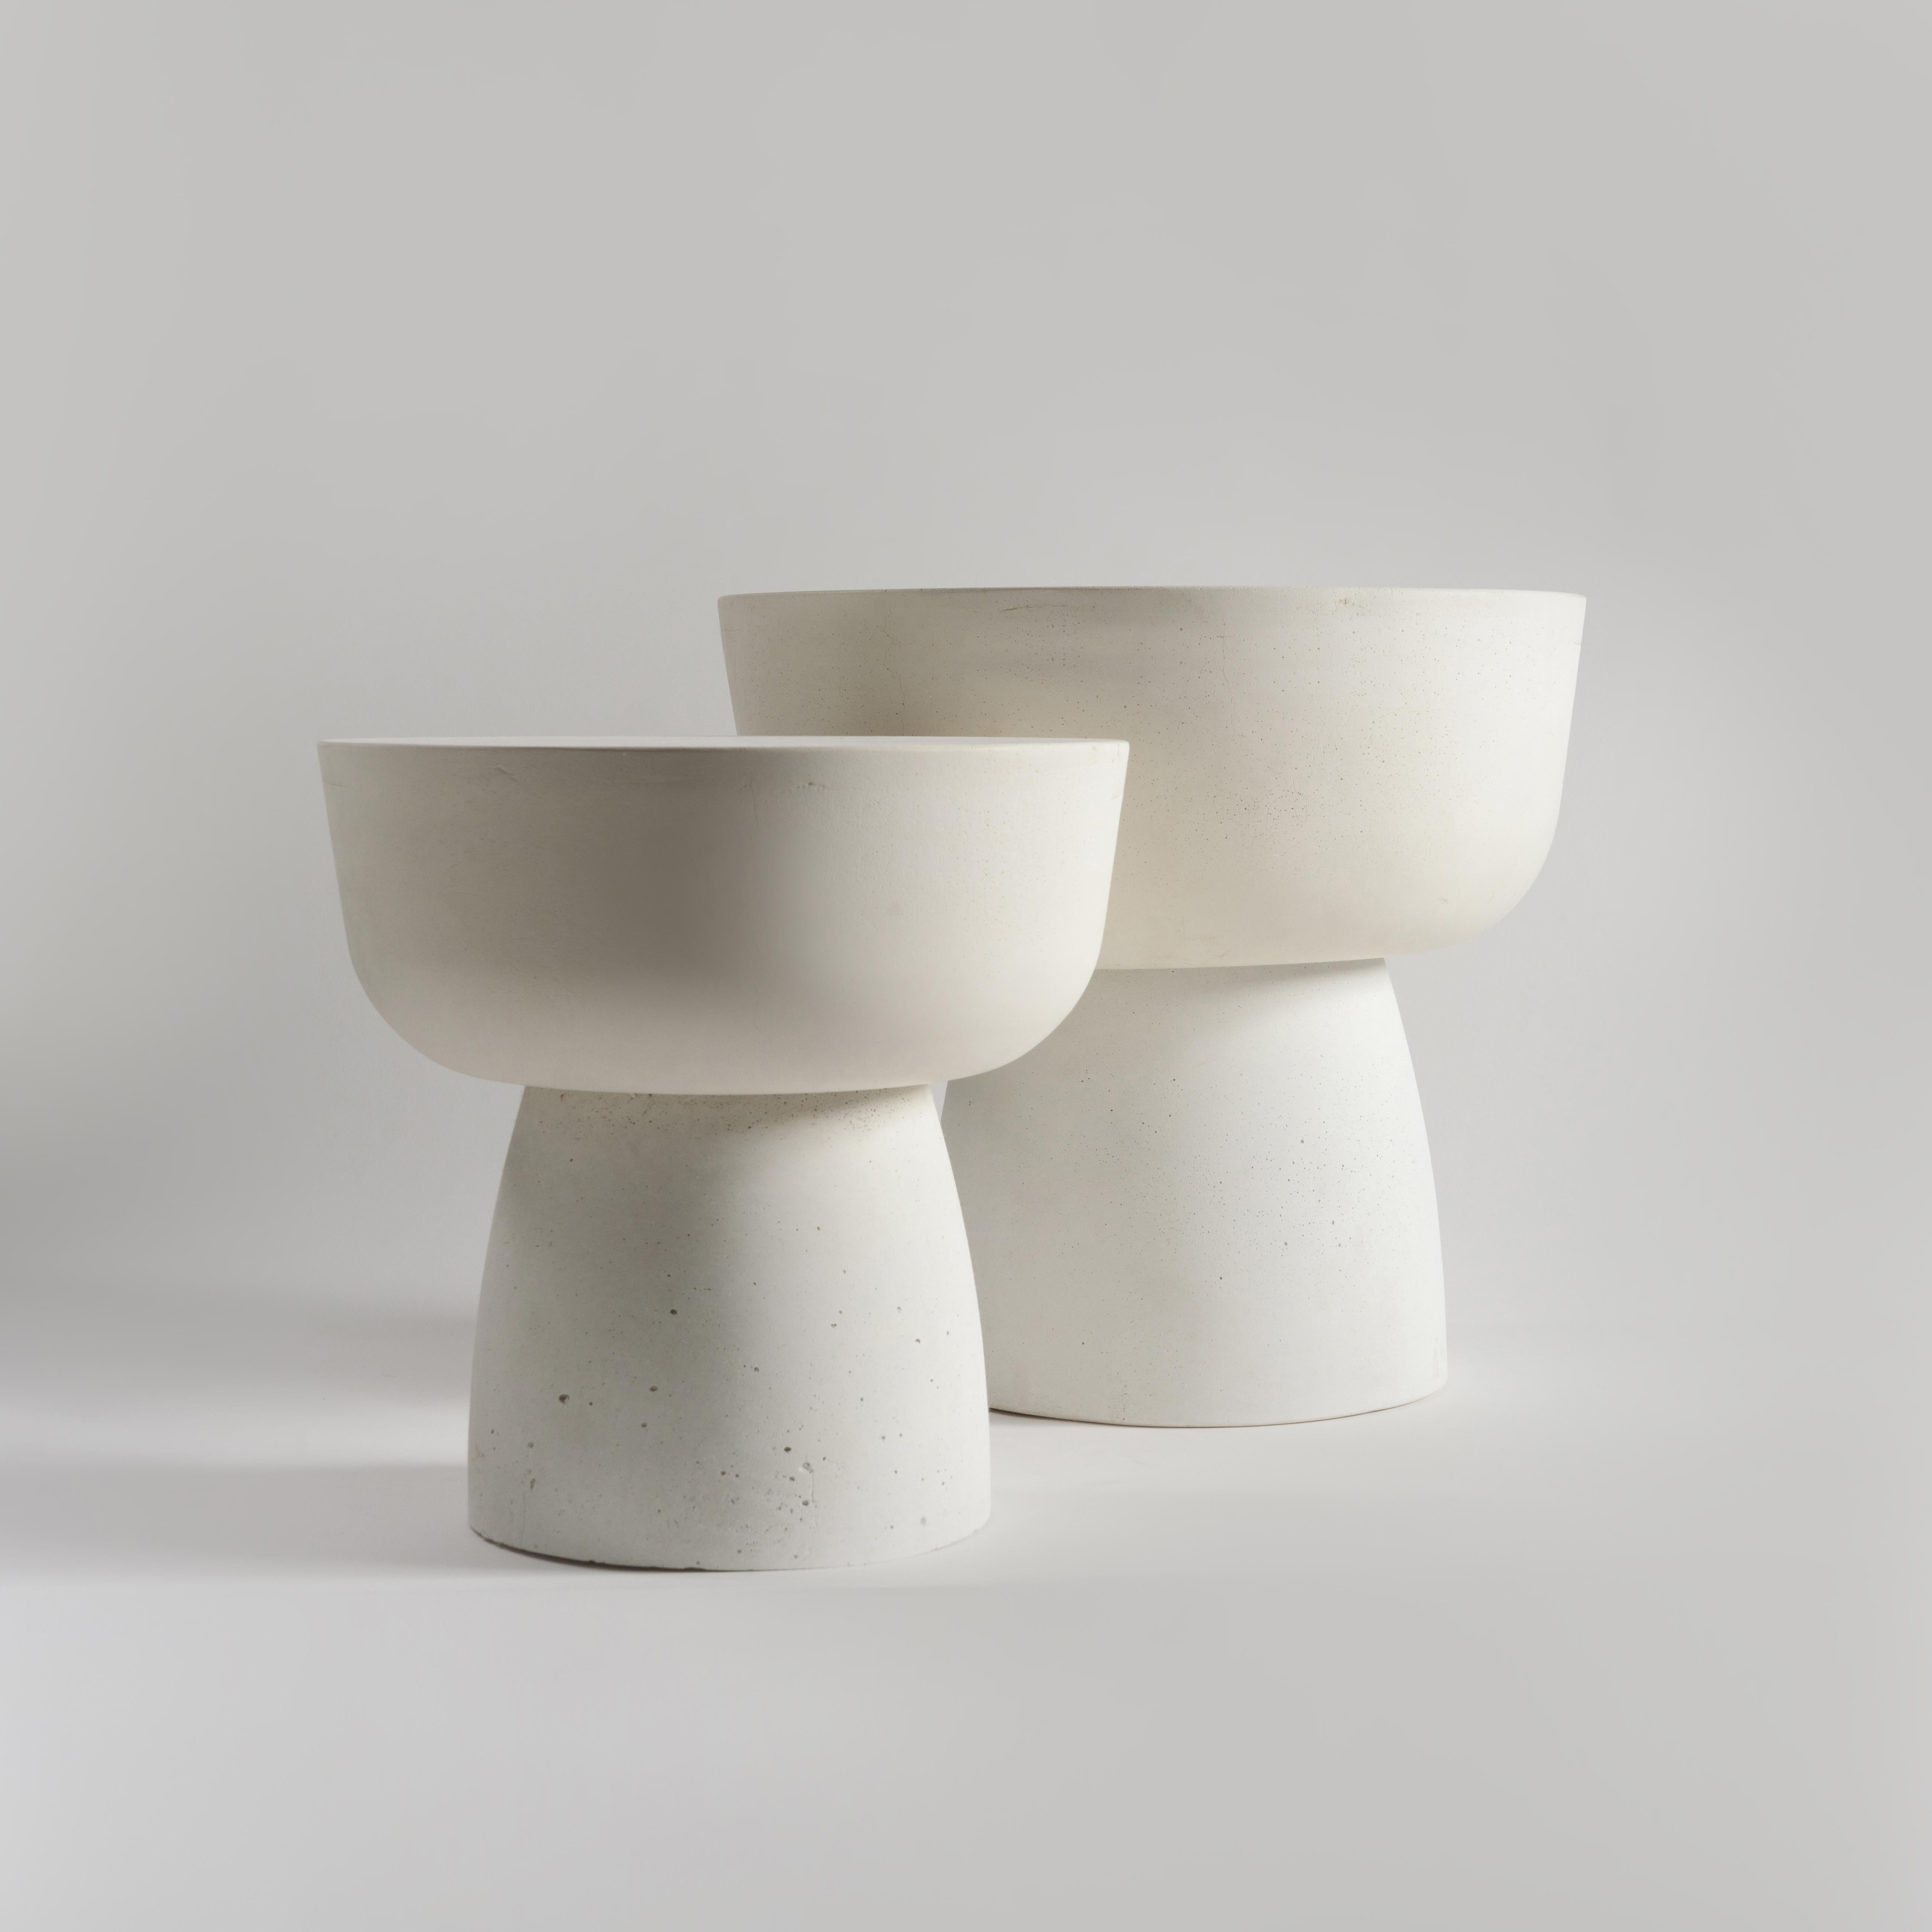 Ensemble de table en pierre moulée blanche MUSHROOM SOLID de taille TALL et LOW, sculpté à la main au 21ème siècle.

La table 'Mushroom Solid' fait partie de notre collection d'objets mono-matériaux. Meuble plutôt sculptural, il est à la fois